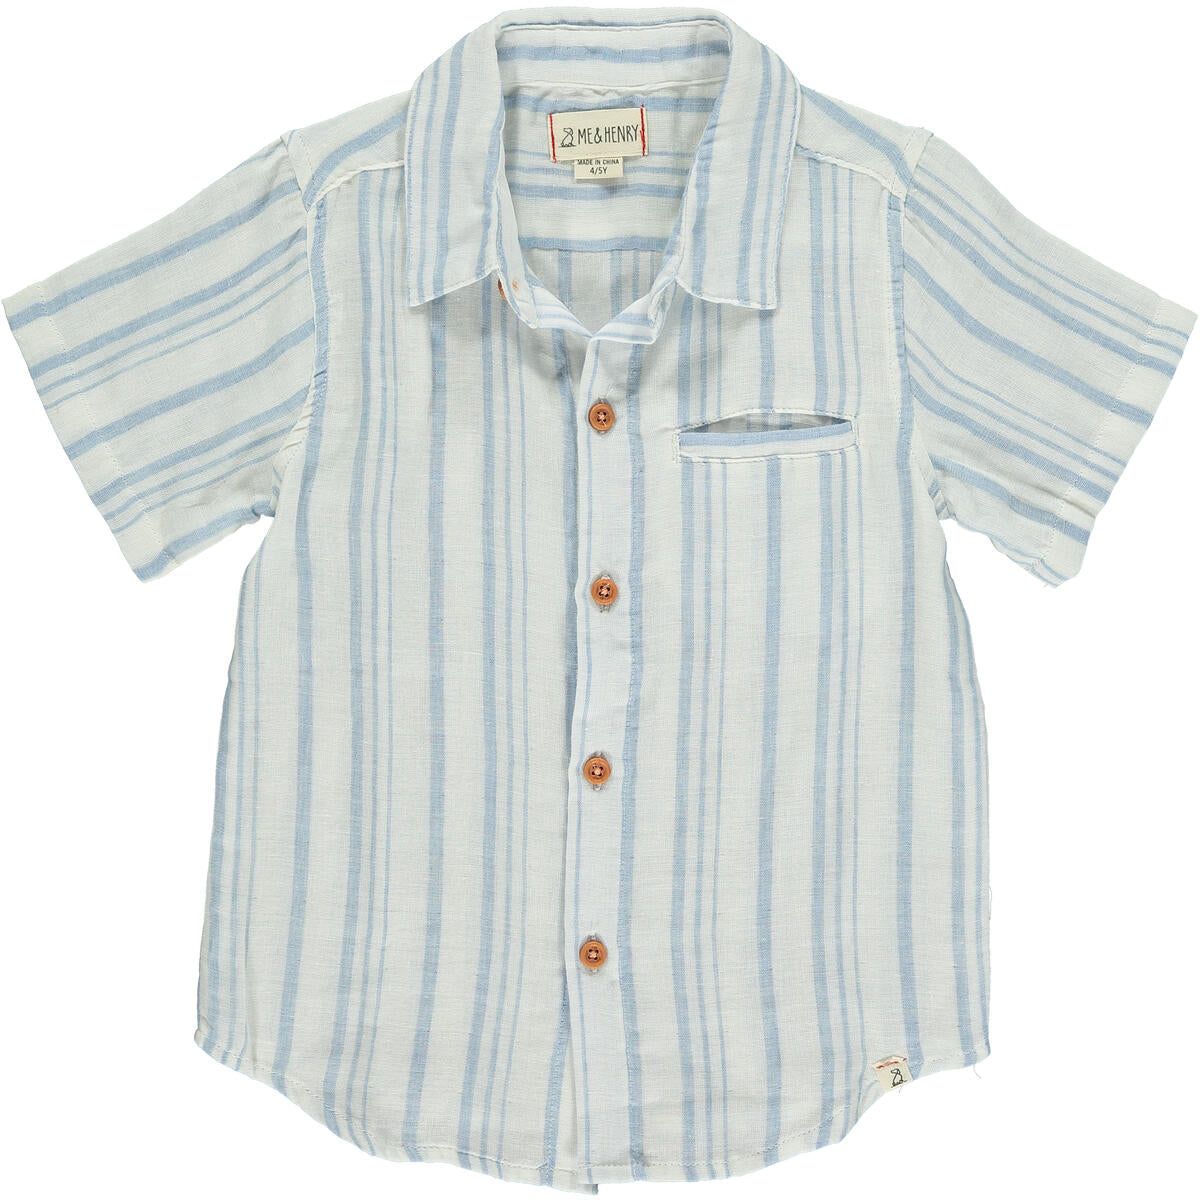 Newport Shirt - Blue/Cream